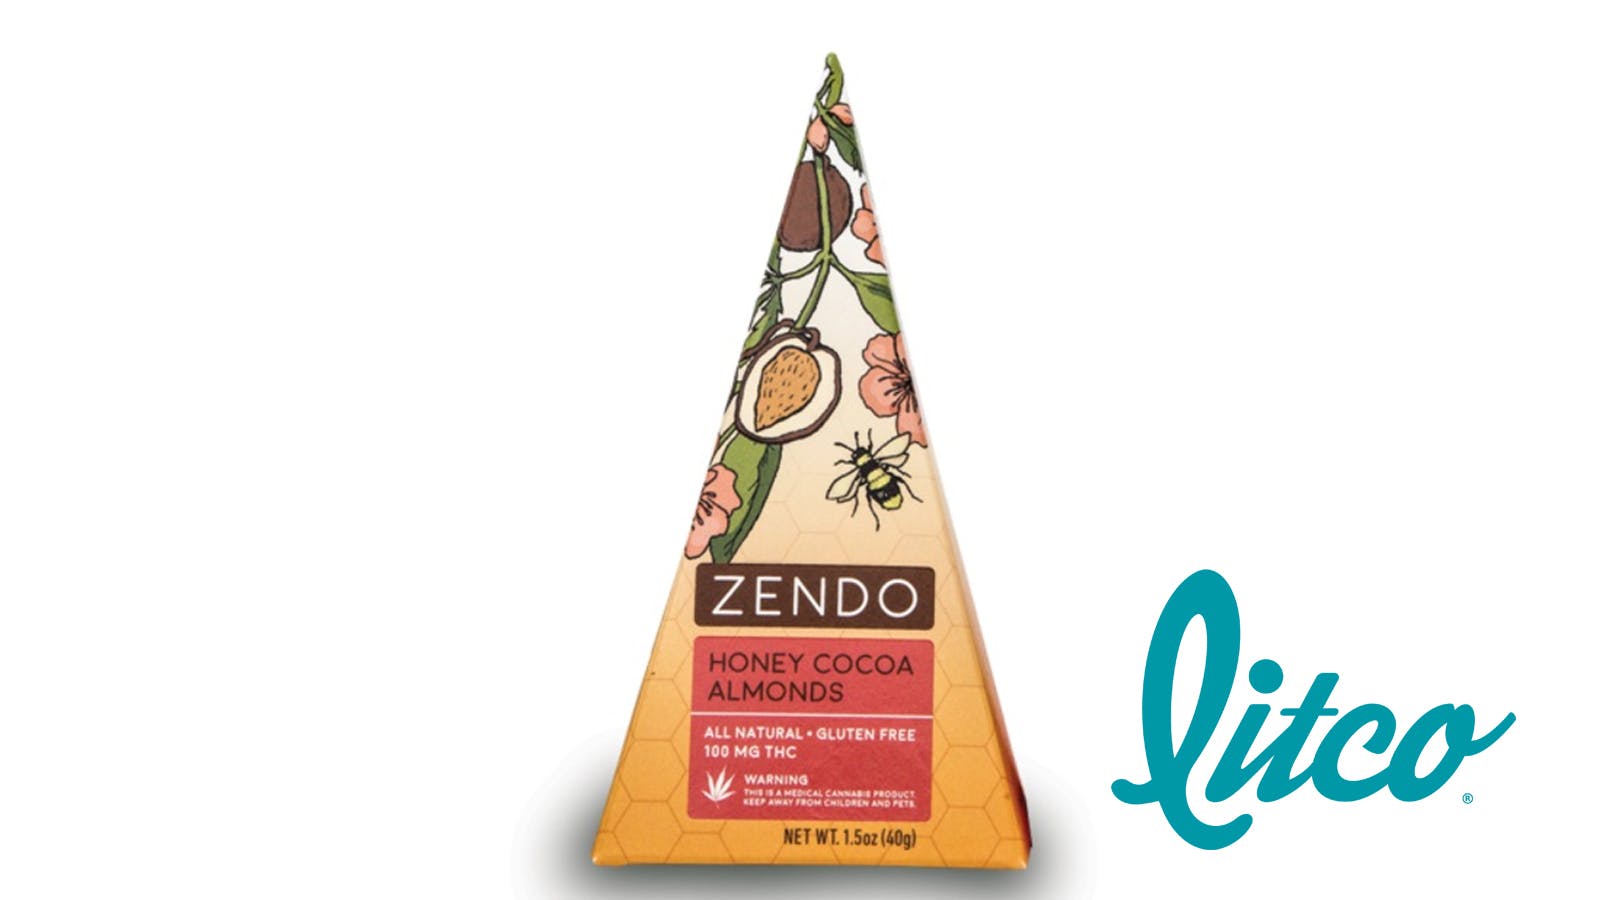 edible-zendo-zendo-honey-cocoa-almonds-2c100mg